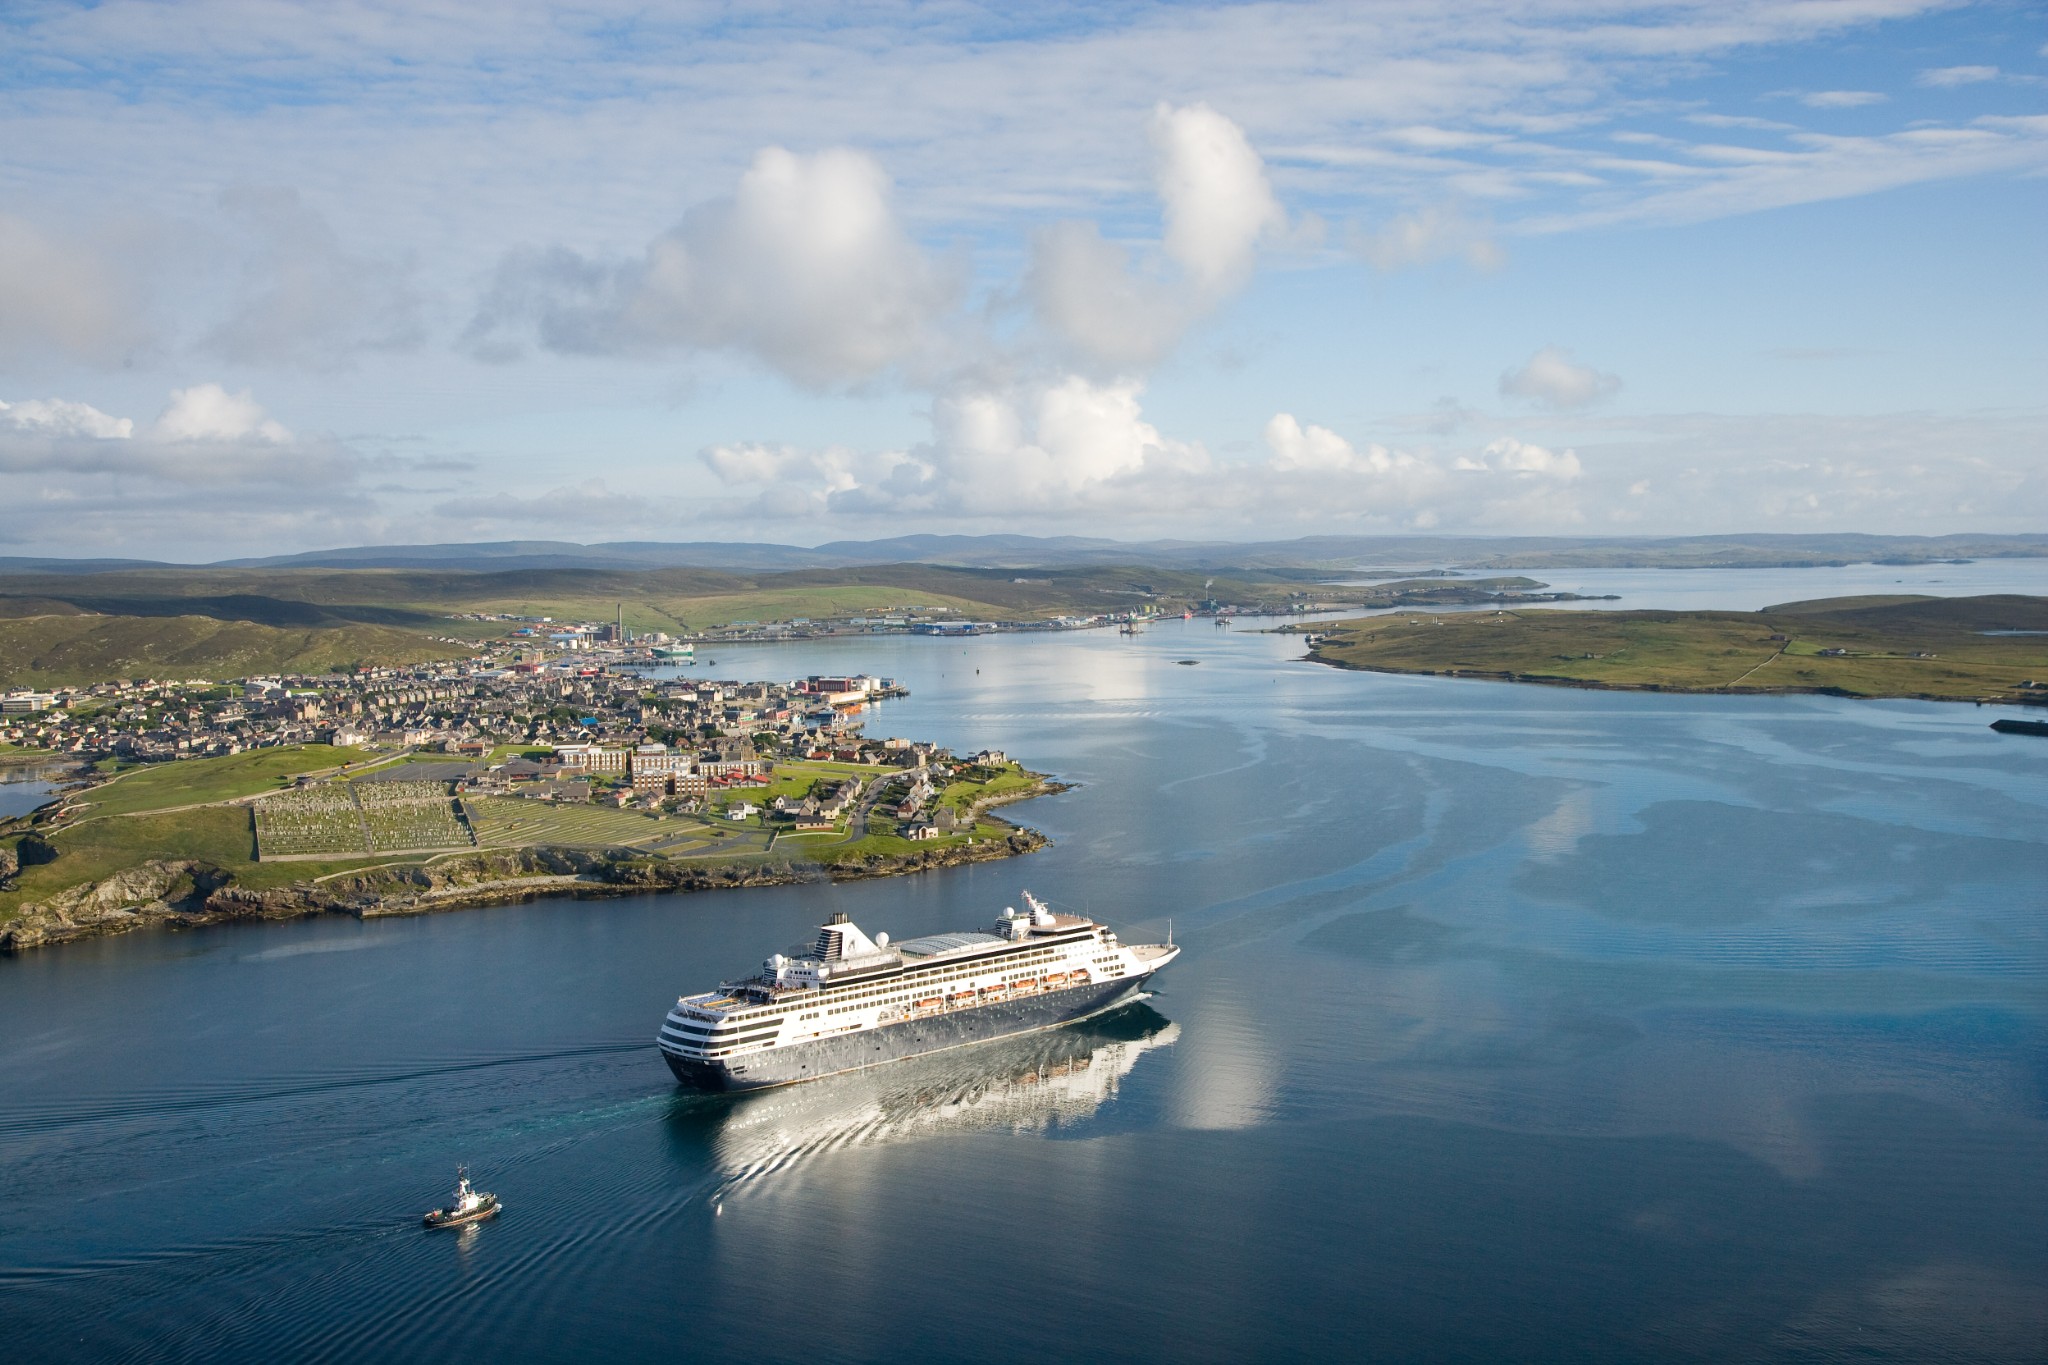 lerwick port authority cruise ships 2022